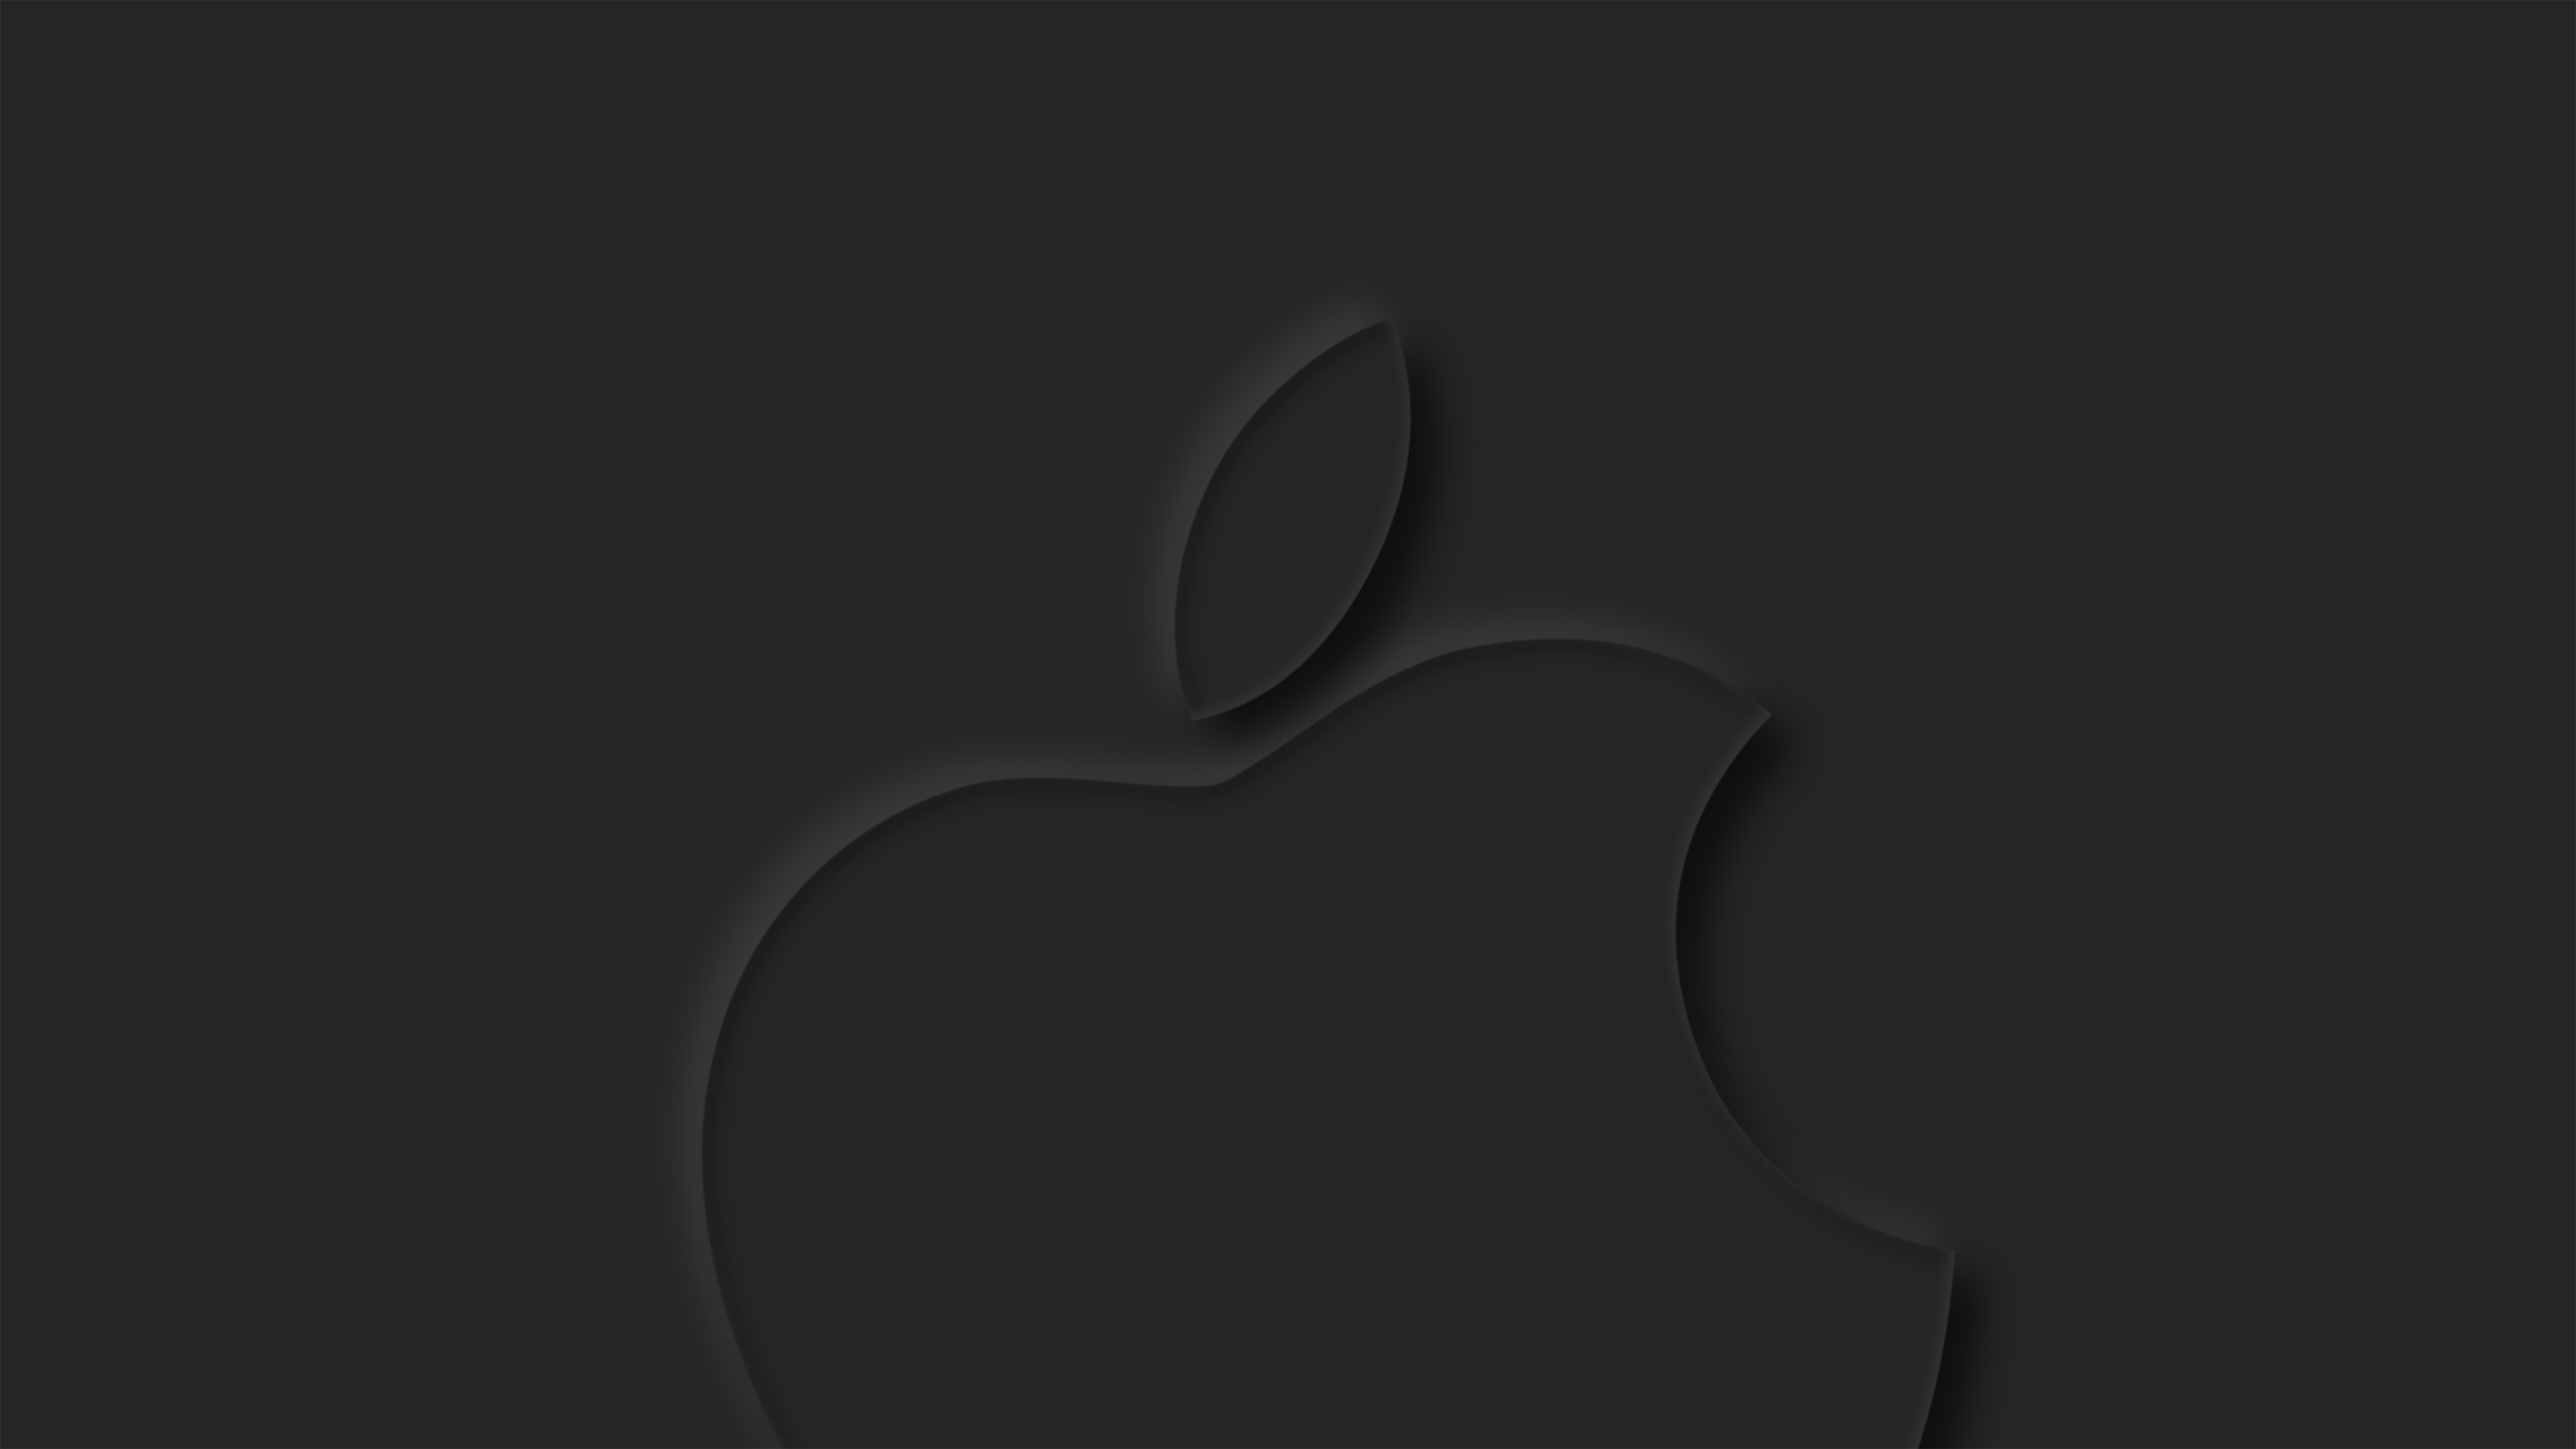 Обои на айфон без. Обои Apple. Айфон логотип 2022. Логотип Apple на черном фоне.